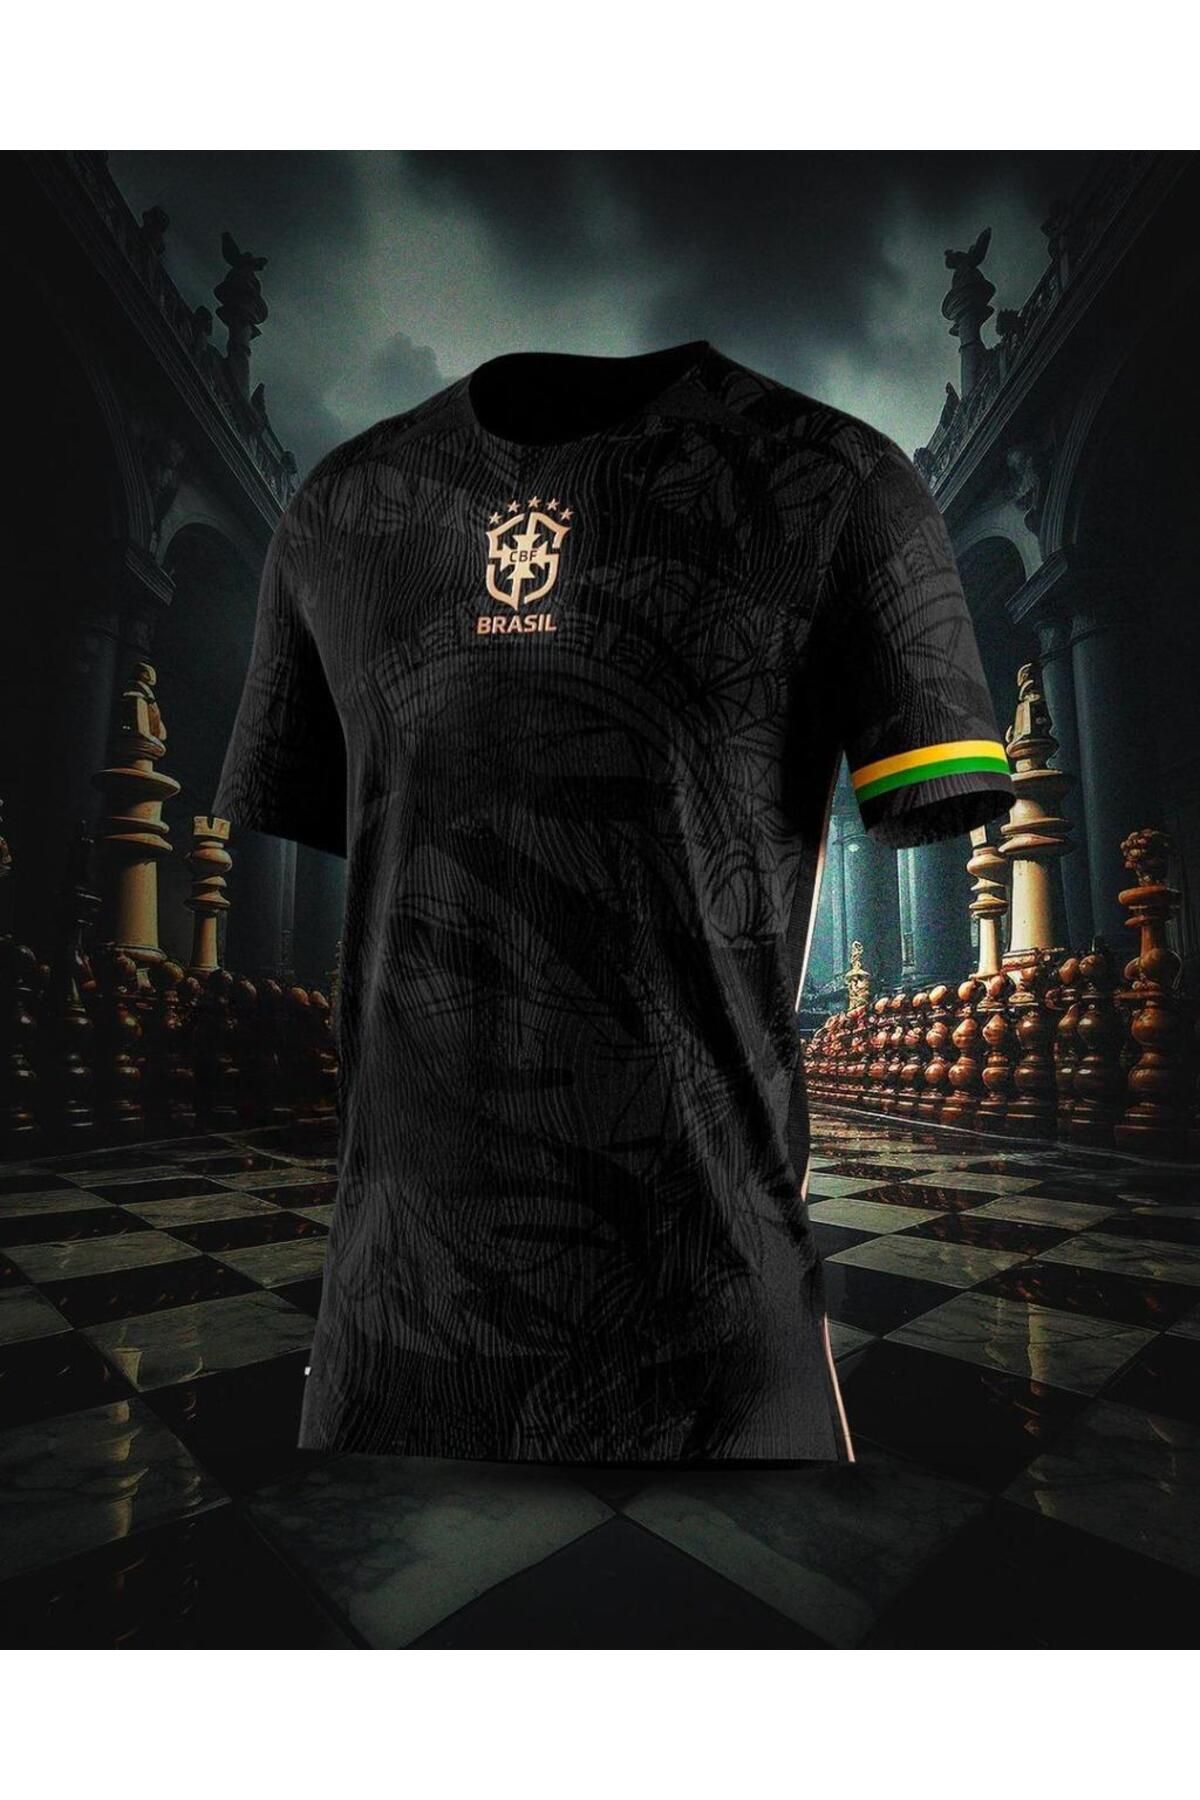 Lion Spor Brezilya Özel Tasarım Siyah Futbol Forması The Prince